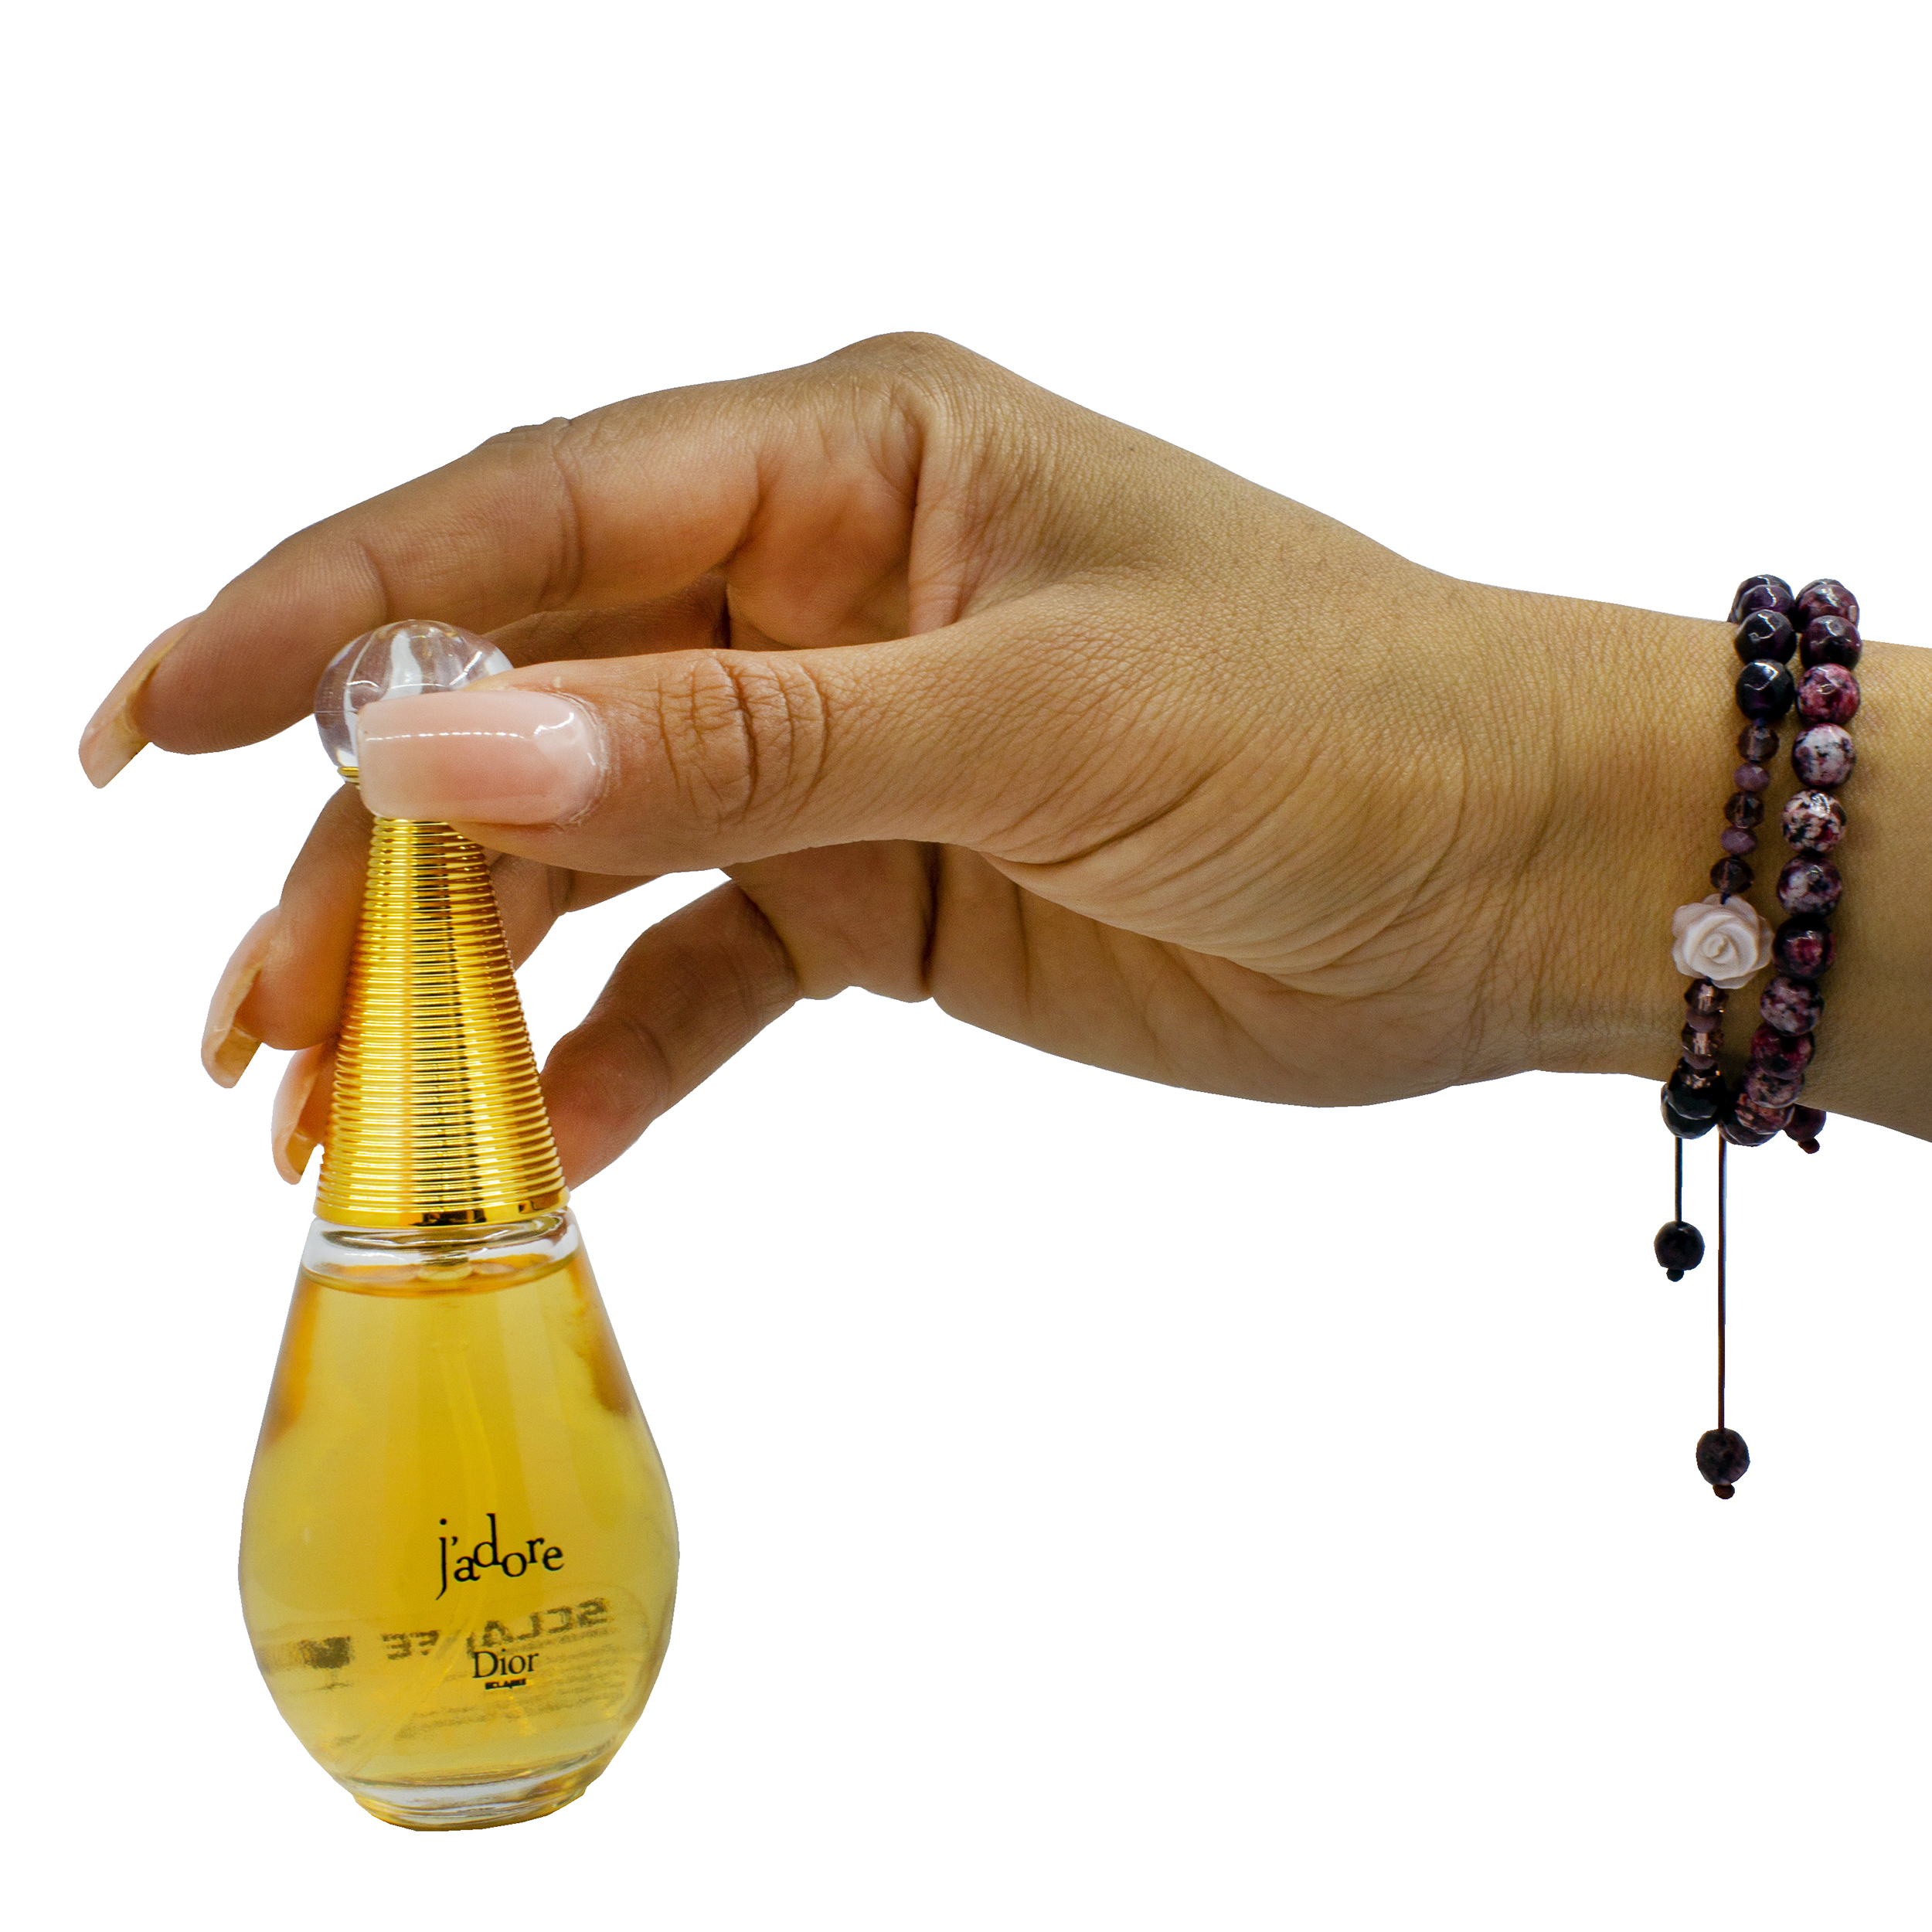 عطر دیور جادور ژادور زنانه  خرید اینترنتی دیور جادور و قیمت  Dior  JAdore  عطر الیسا